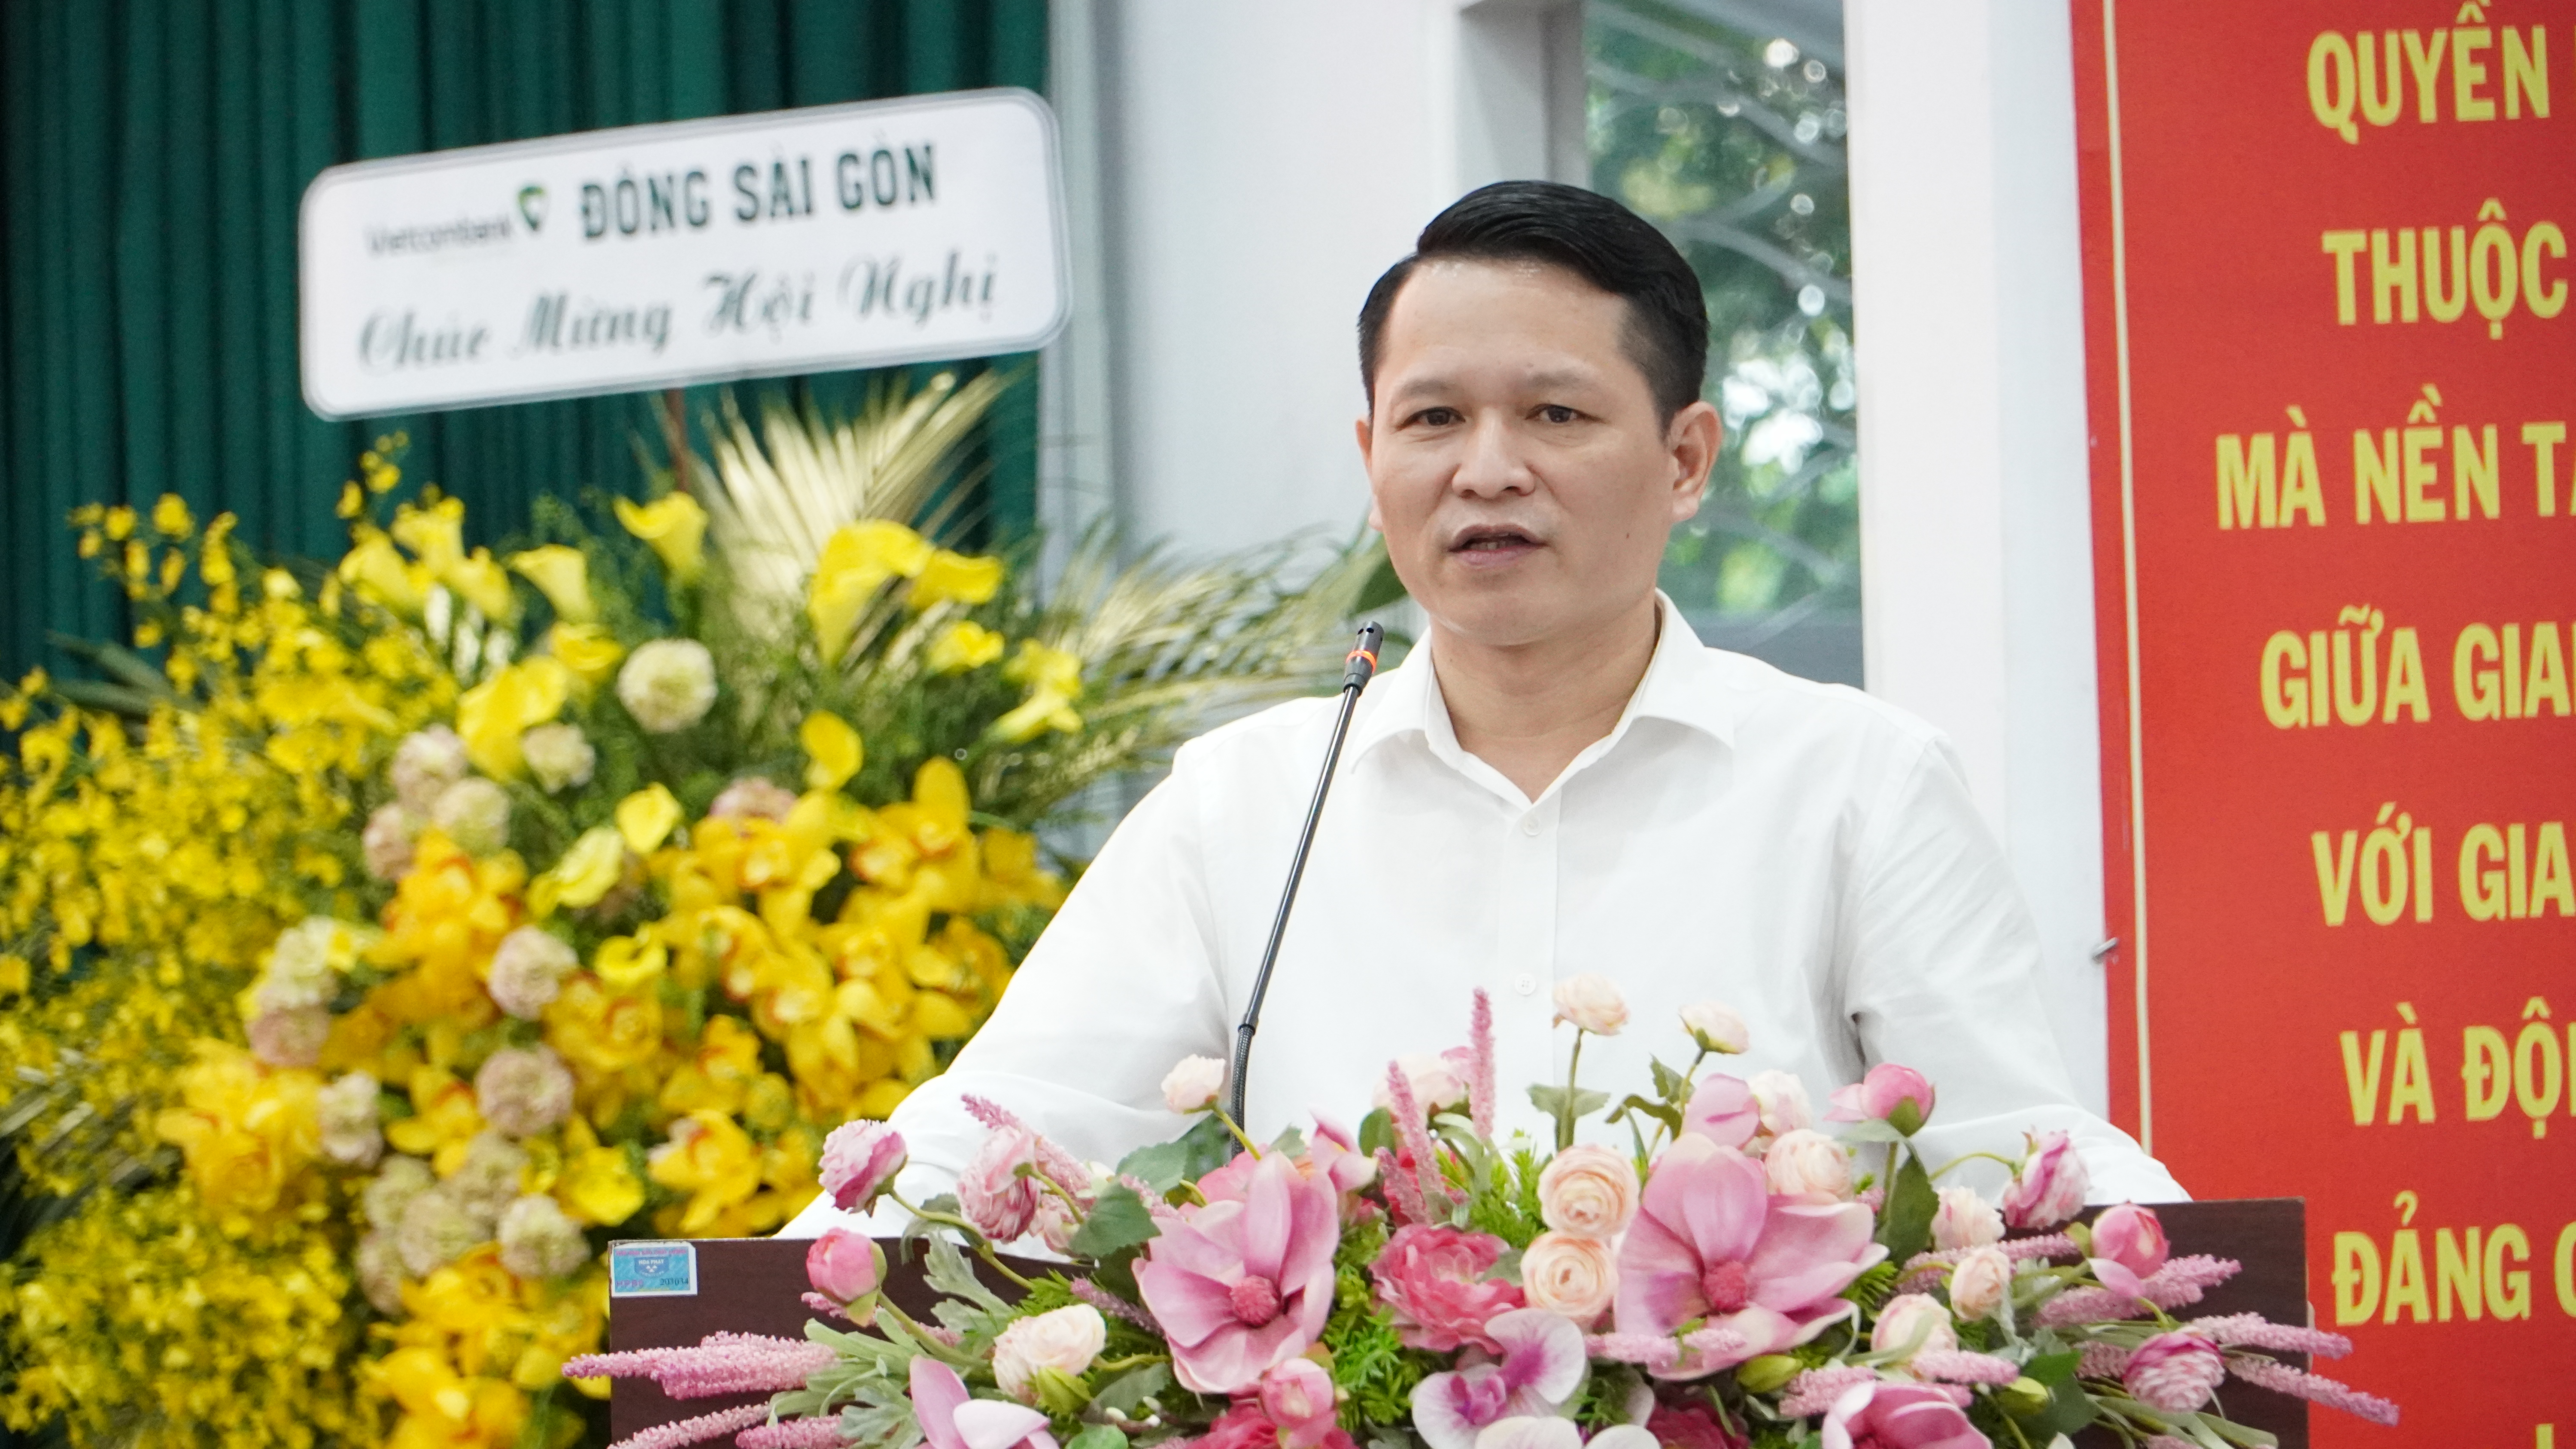 Quyền Cục trưởng Nguyễn Văn Hòa phát biểu tại HN triên khai công tác năm Chi cục Quận 1 03.12.2021